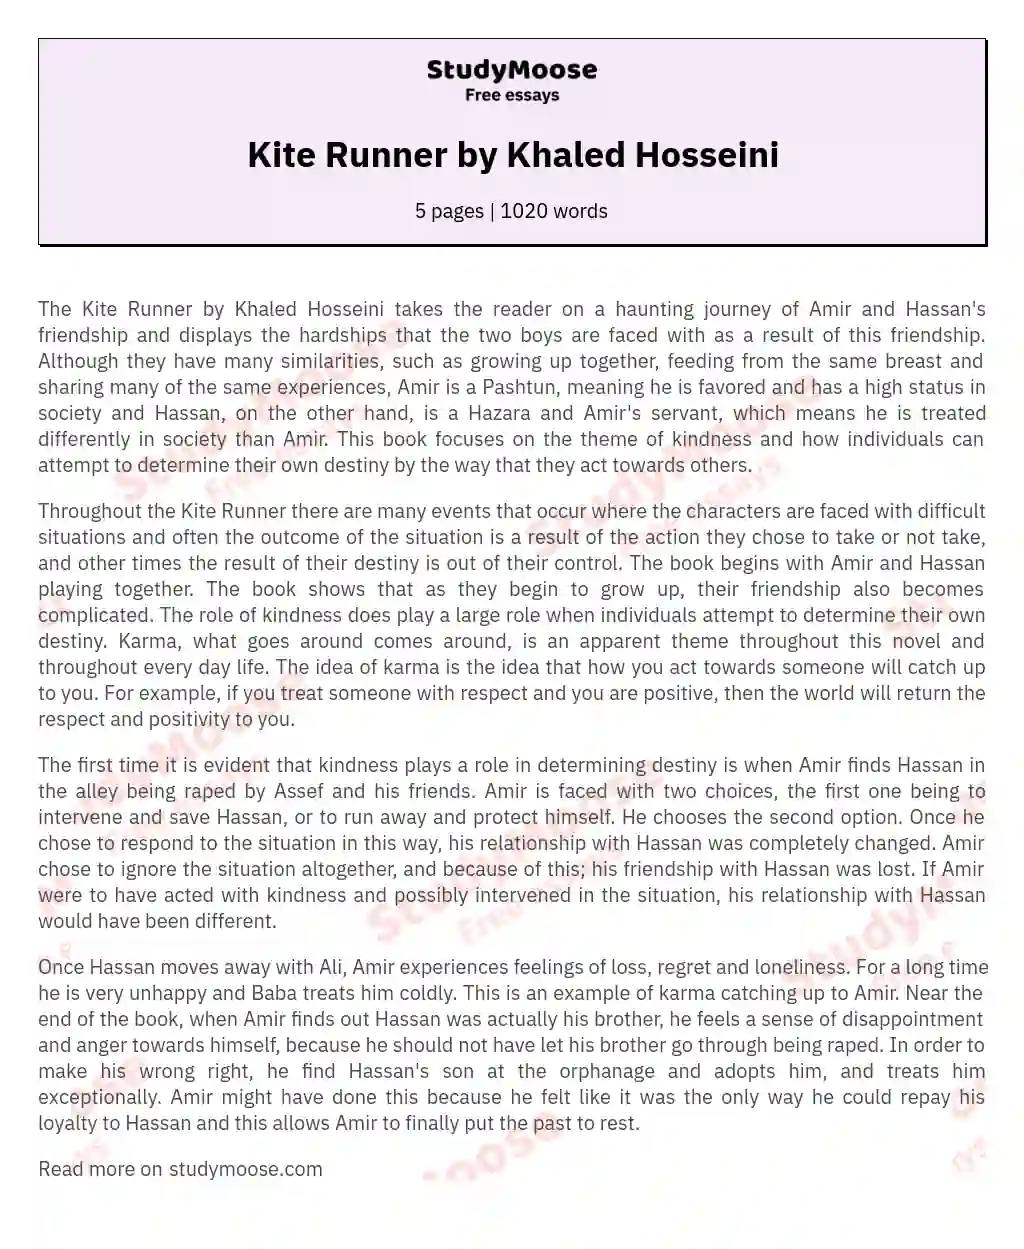 Kite Runner by Khaled Hosseini essay